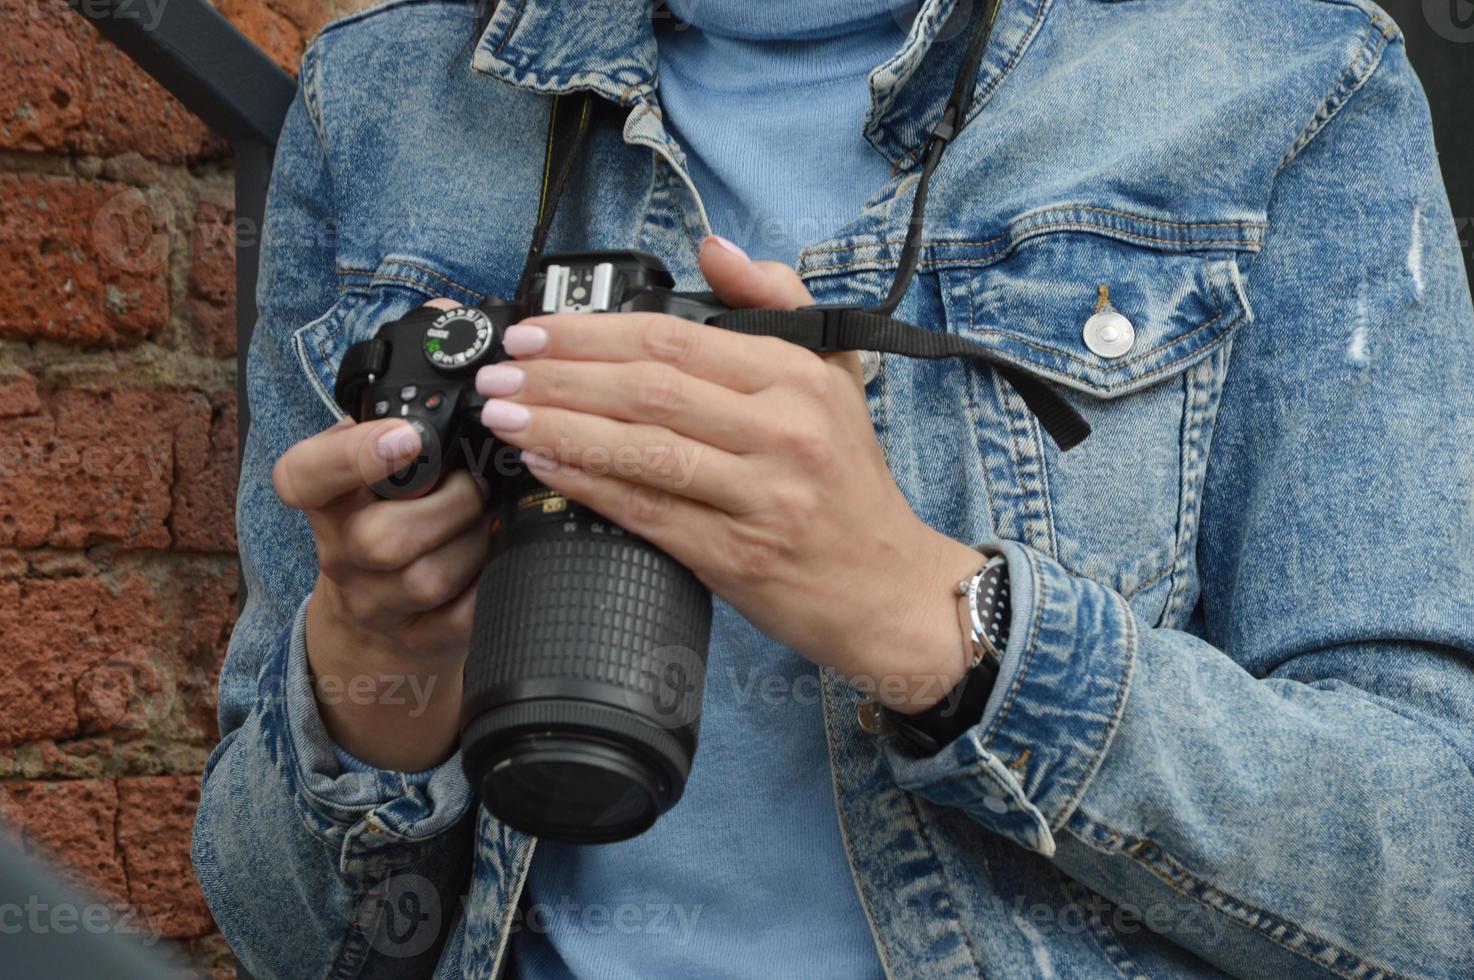 les mains des femmes tiennent un appareil photo. une fille dans une veste en jean regarde à travers des images sur un appareil photo professionnel. fermer.